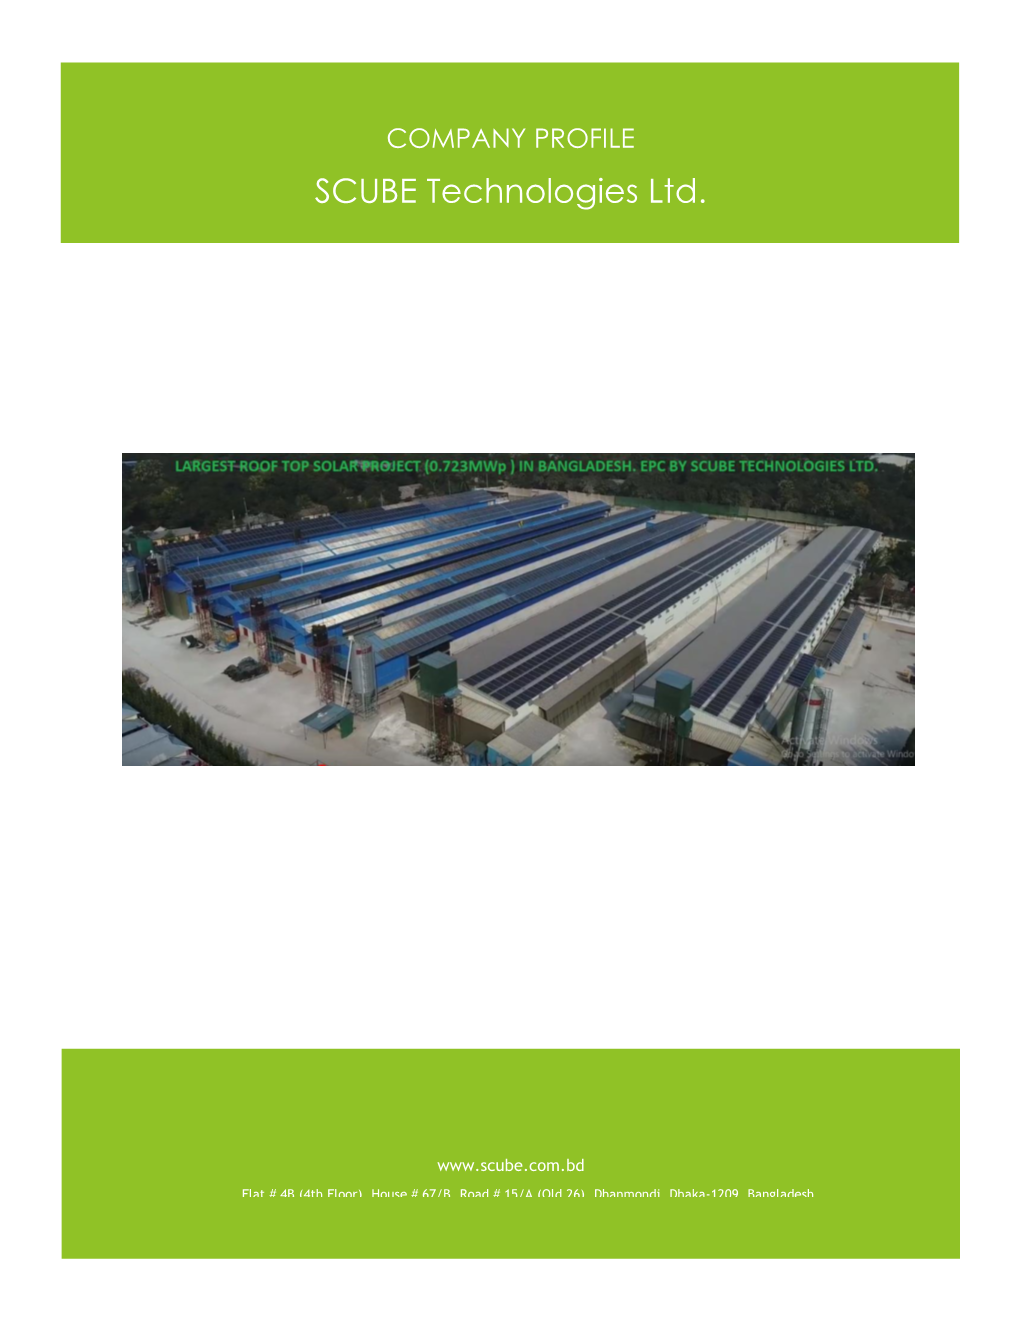 COMPANY PROFILE SCUBE Technologies Ltd